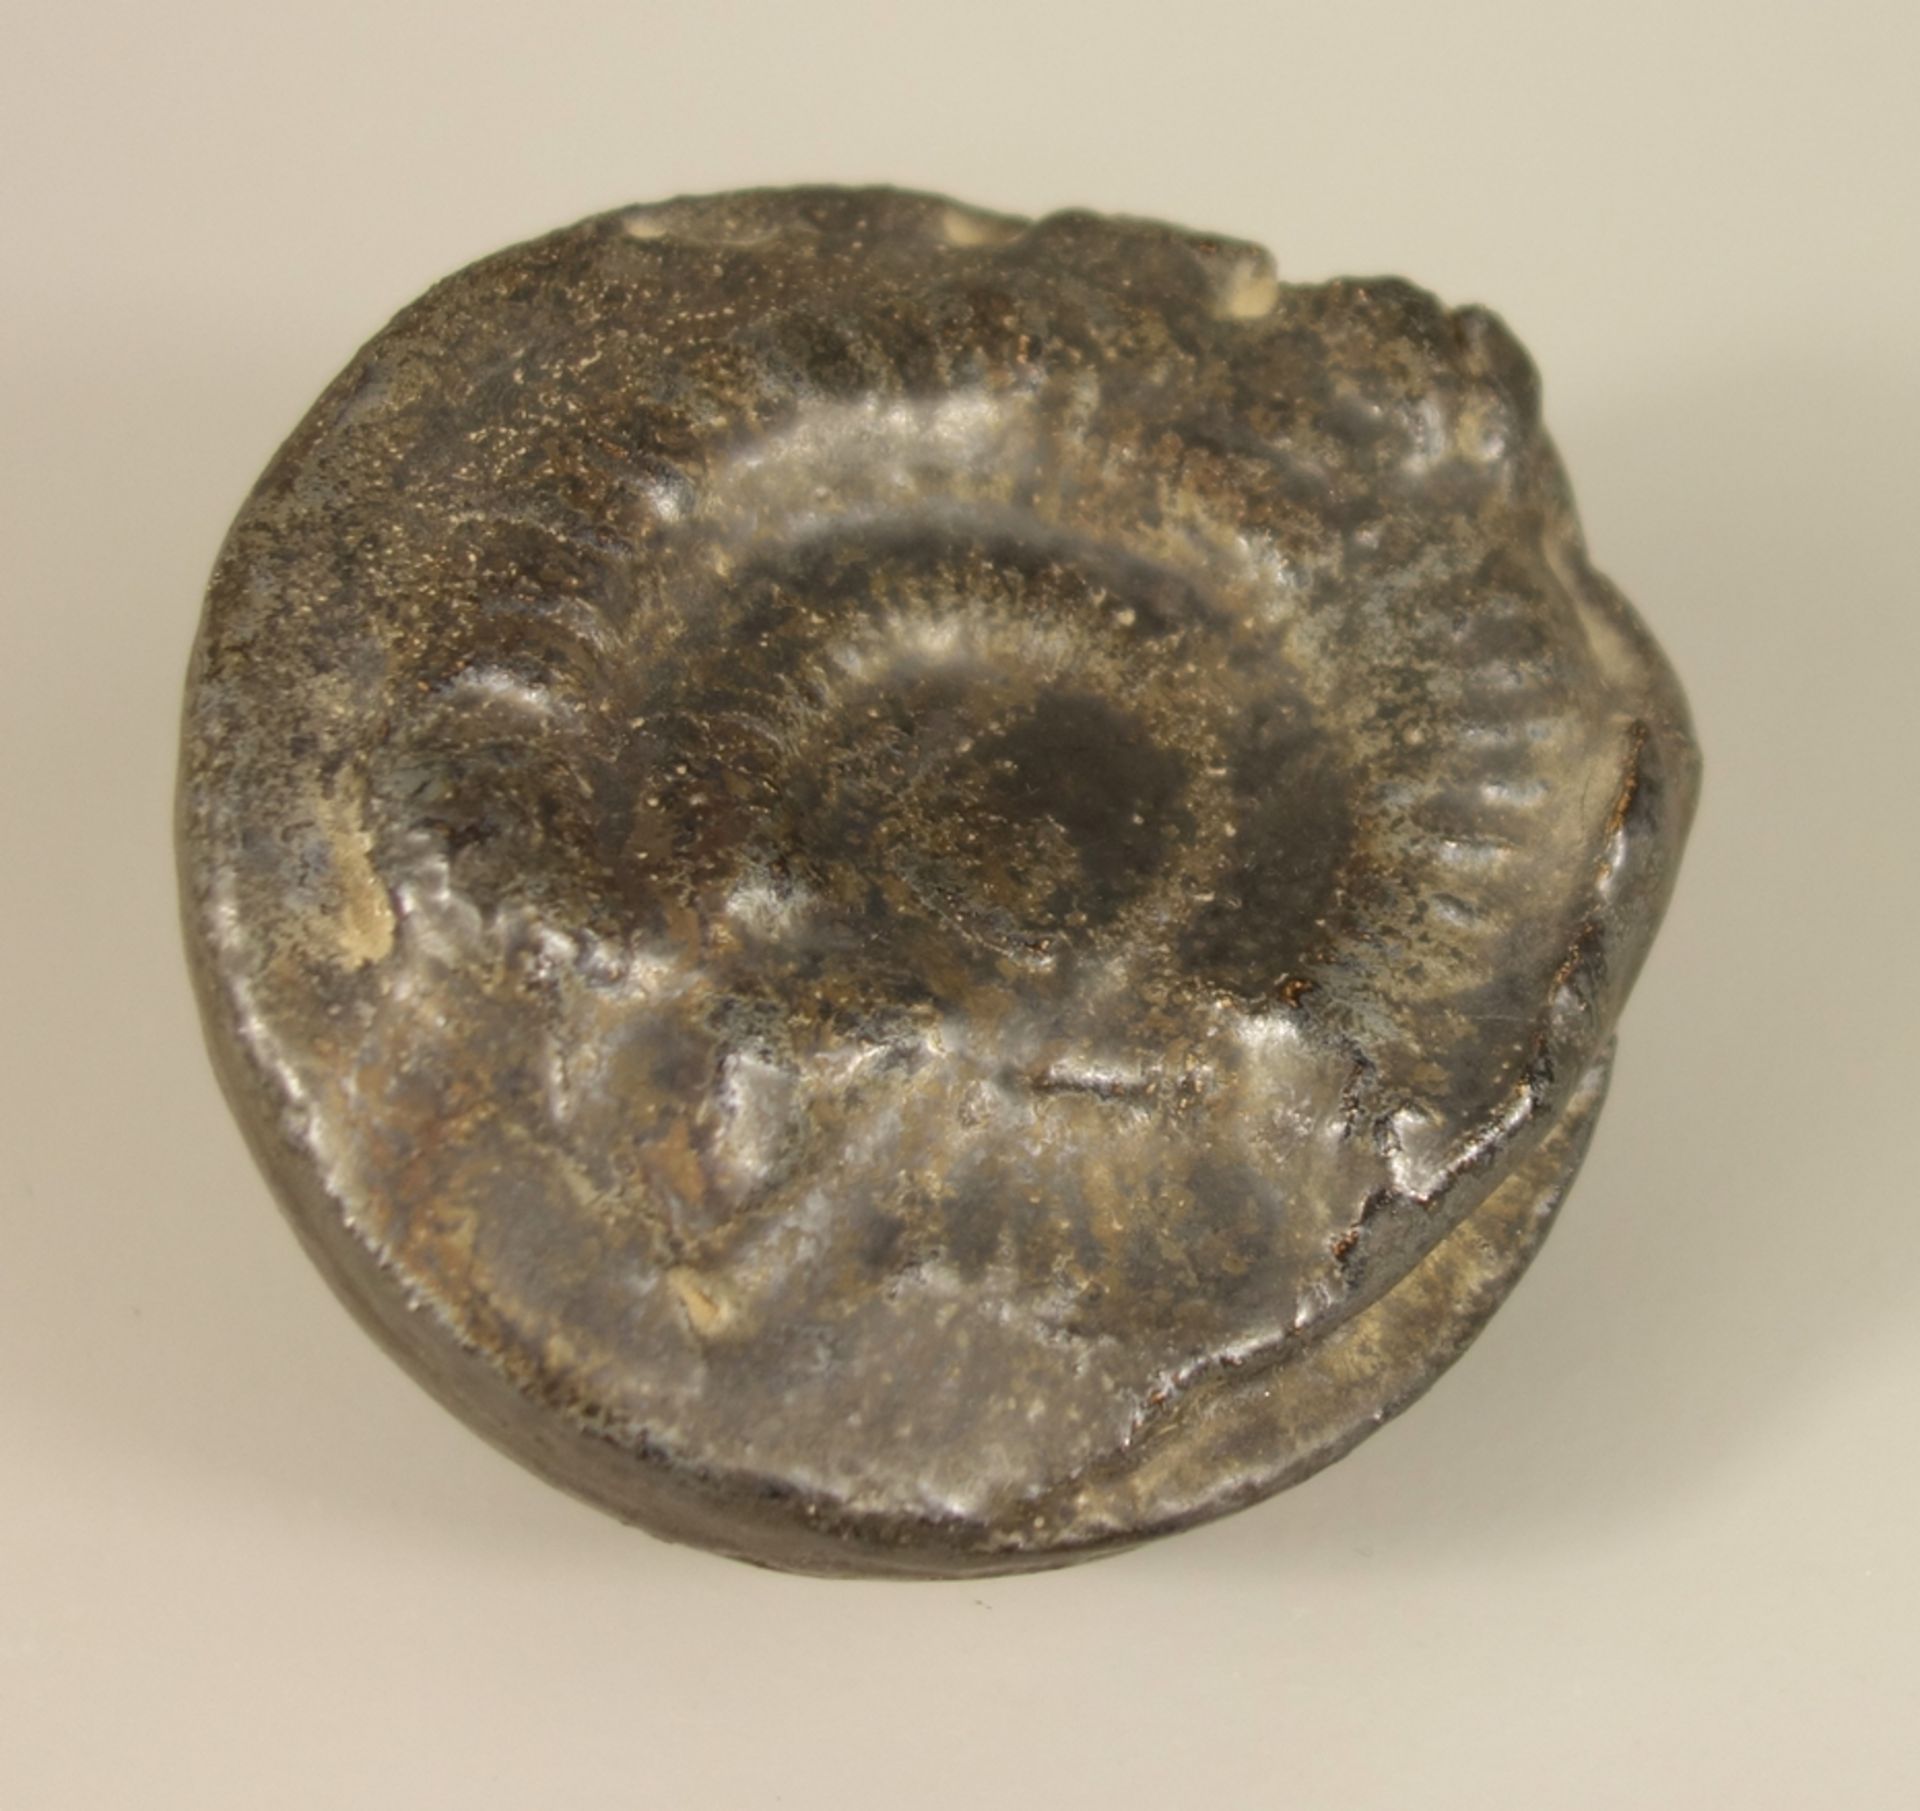 Halbkugel mit Ammonit, Studiokeramik, signiert, unglasierter Stand, rückseitig ungedeutete